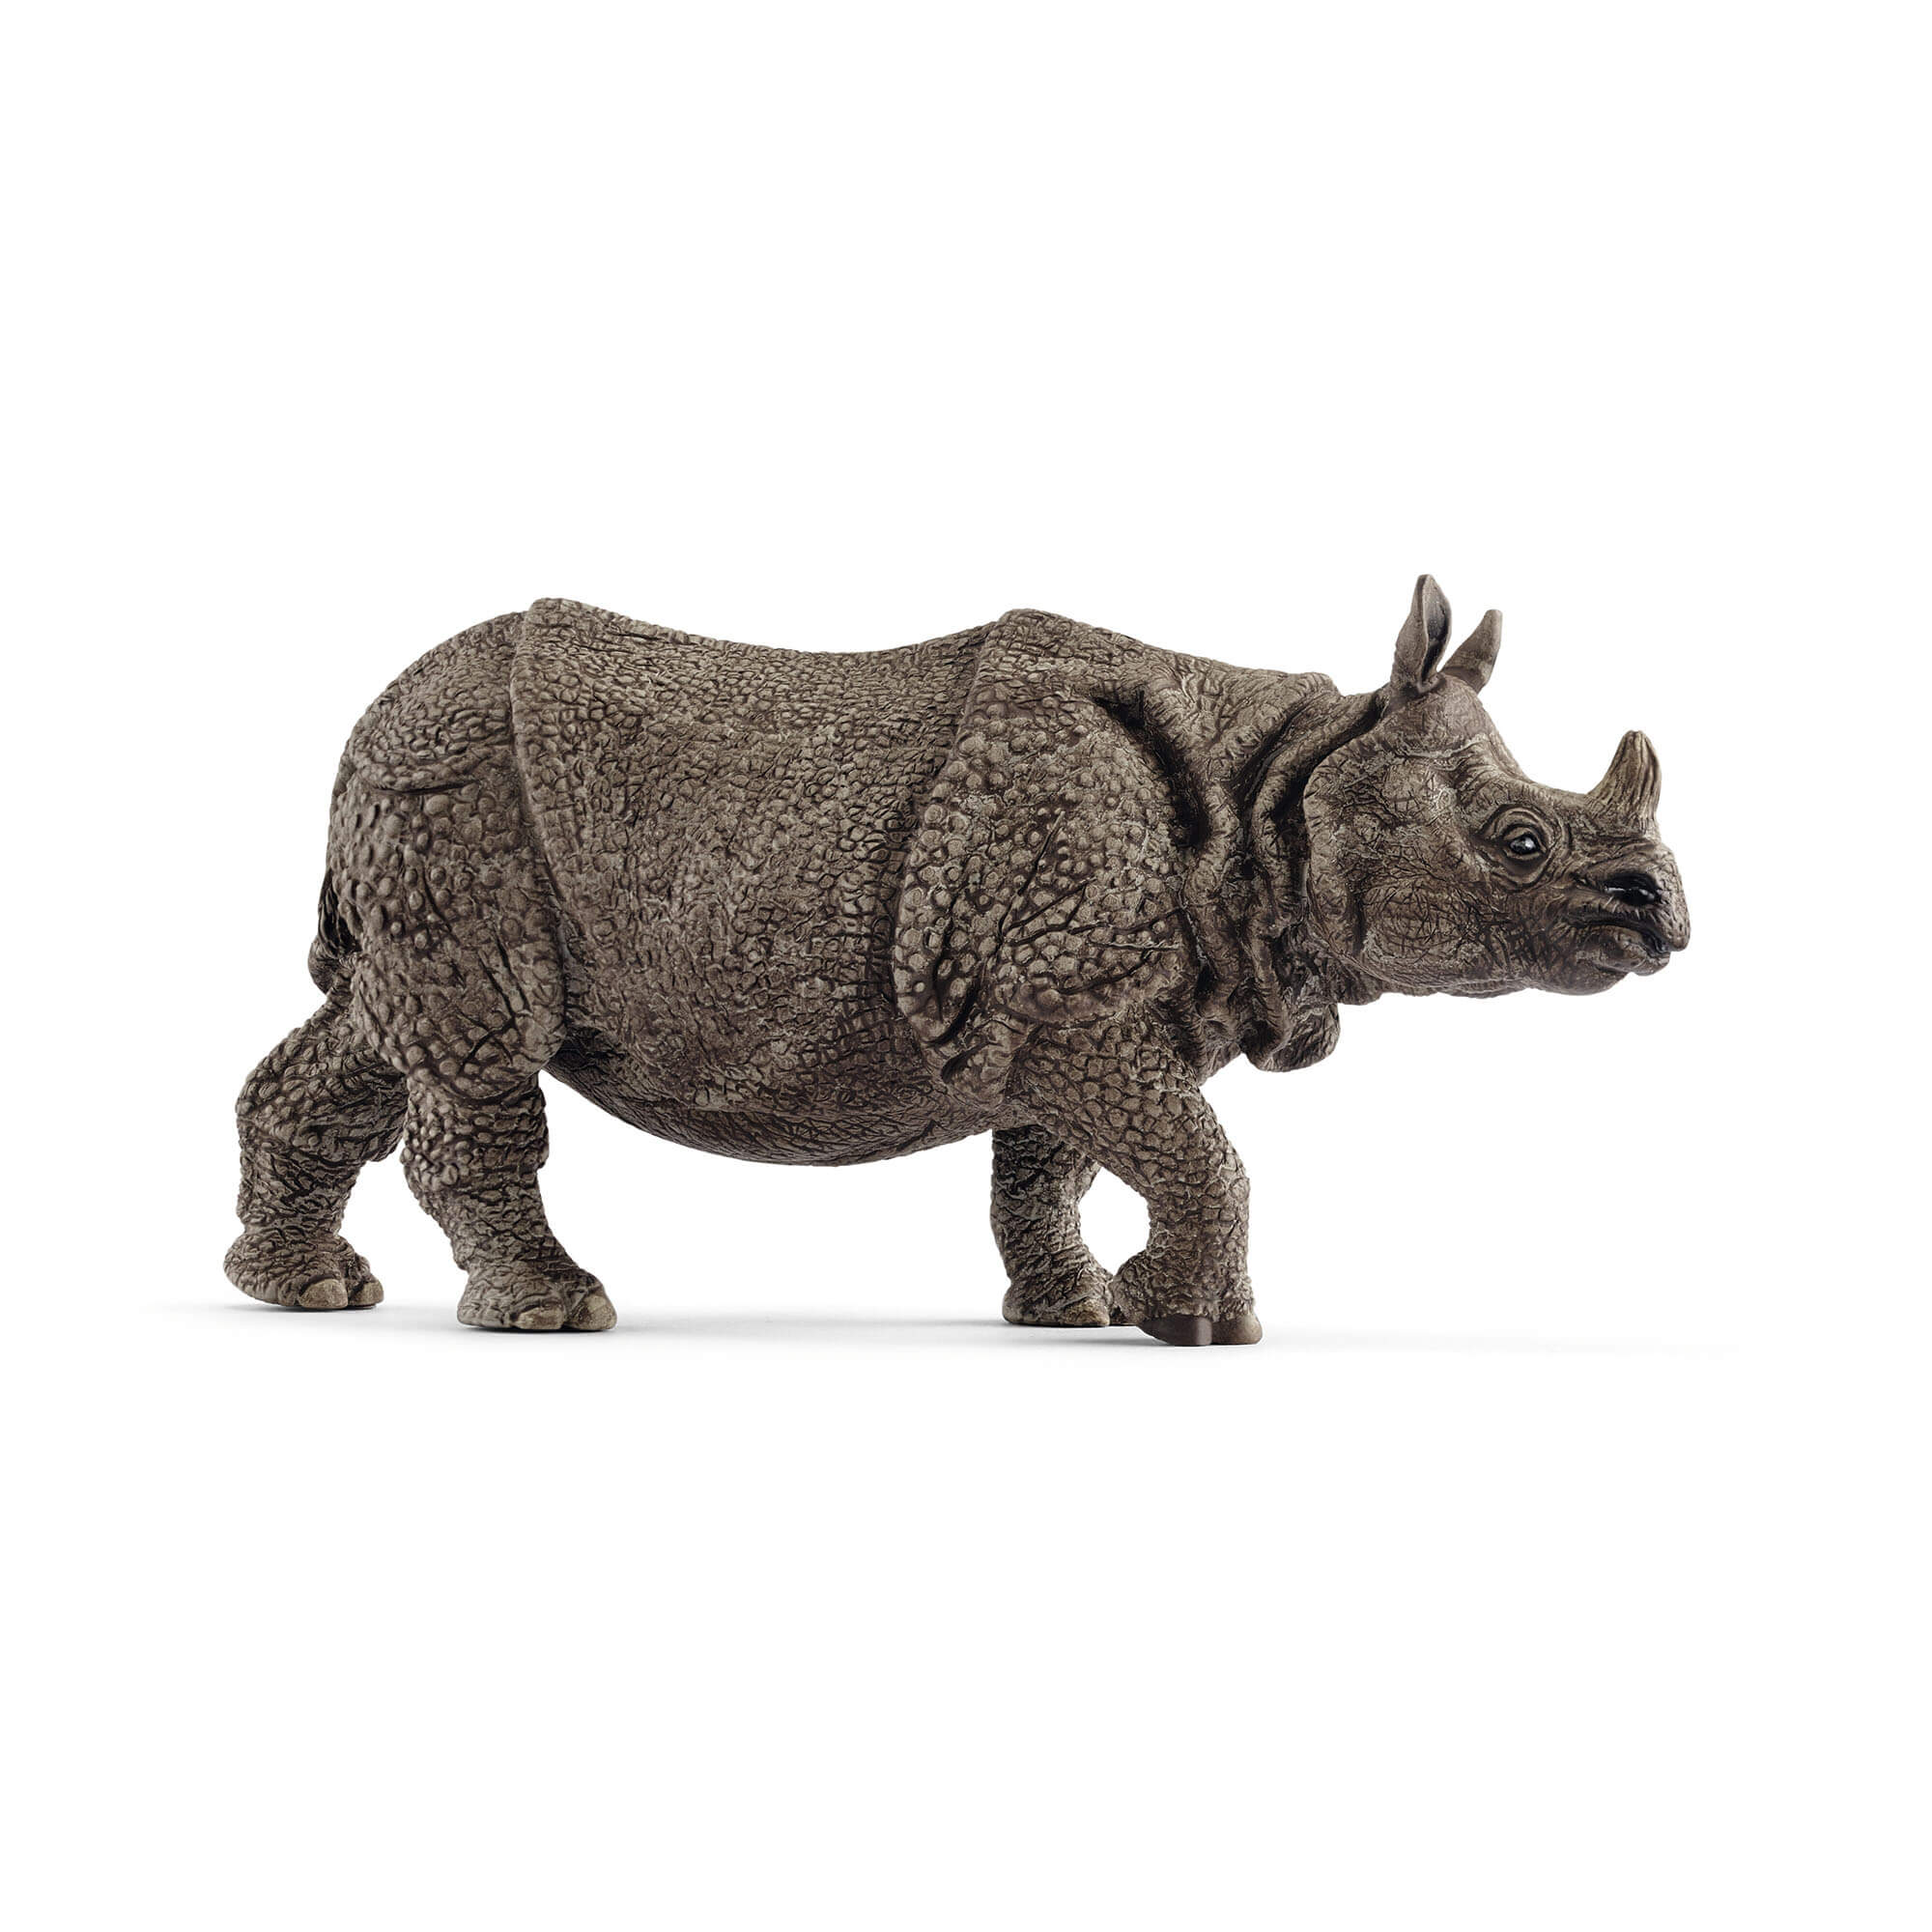 Schleich Wild Life Indian Rhinoceros Animal Figure